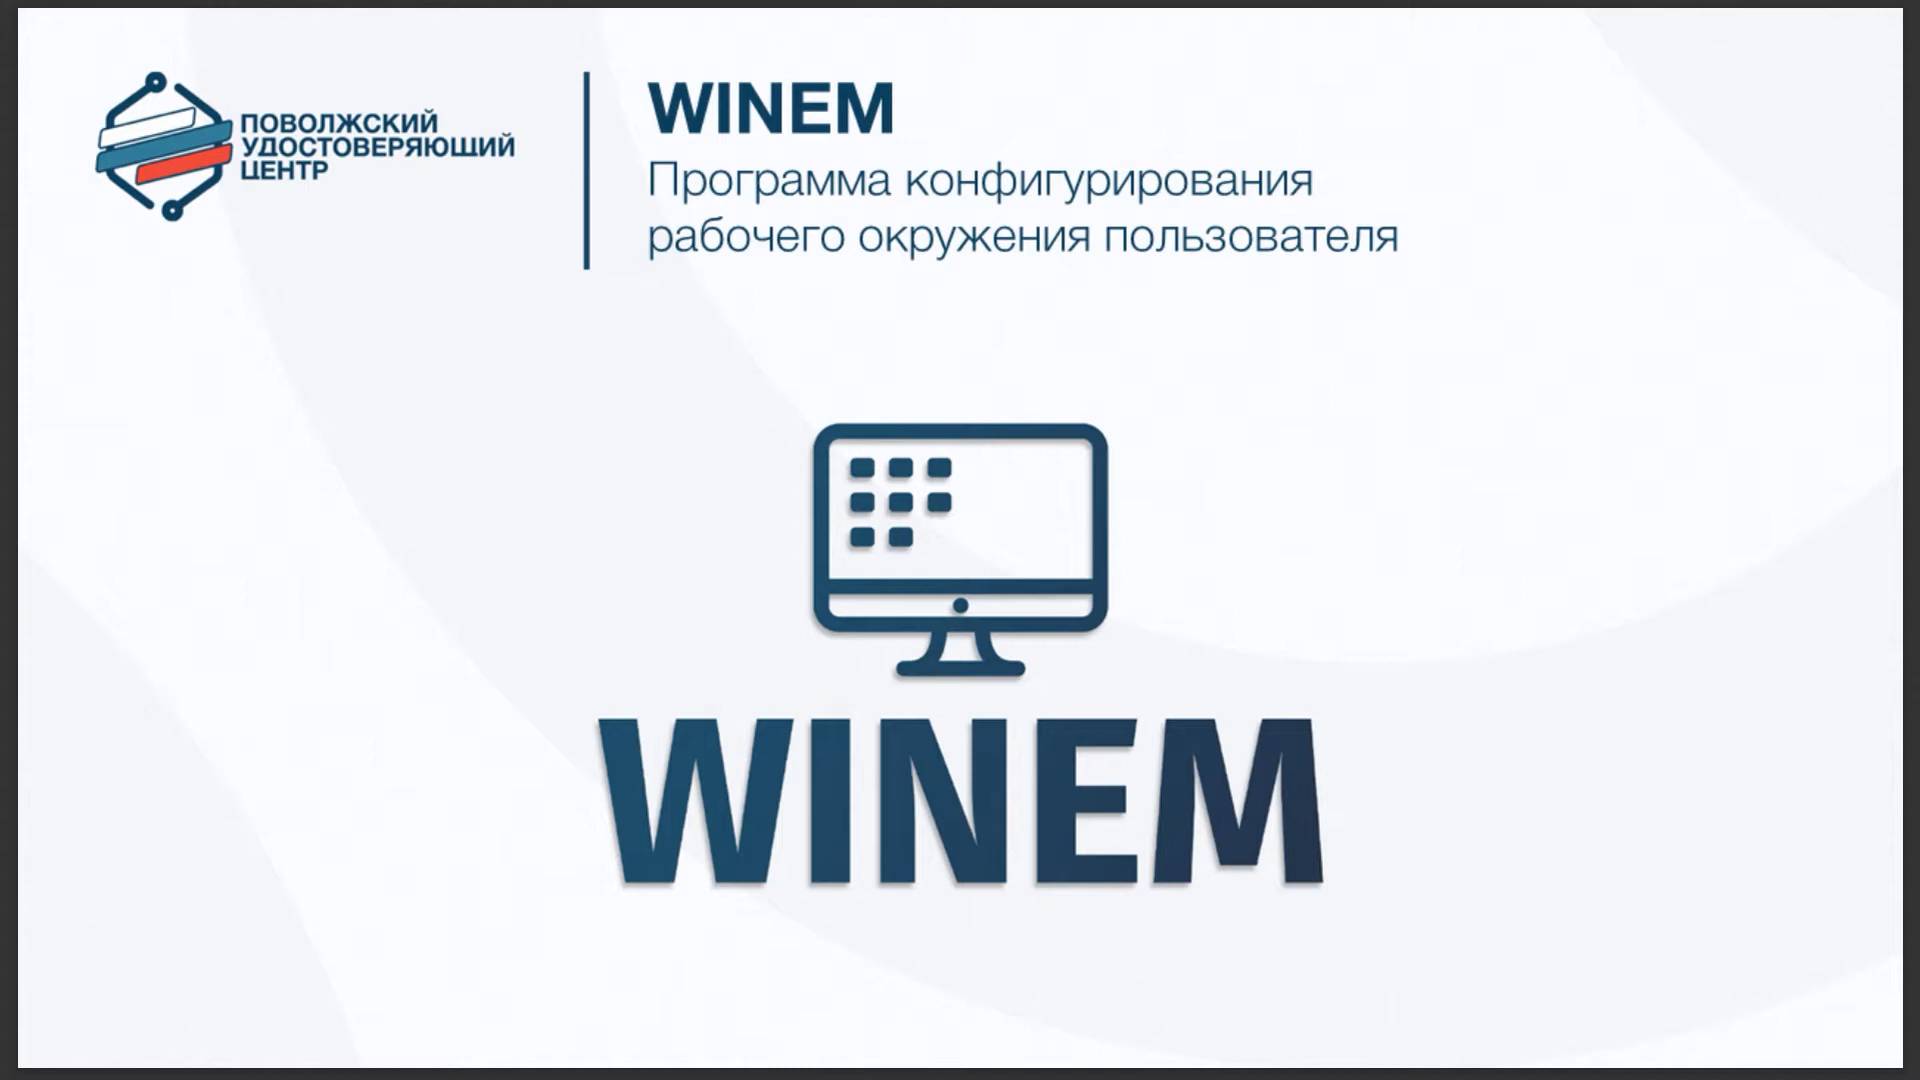 WINEM - программа конфигурирования рабочего окружения пользователя